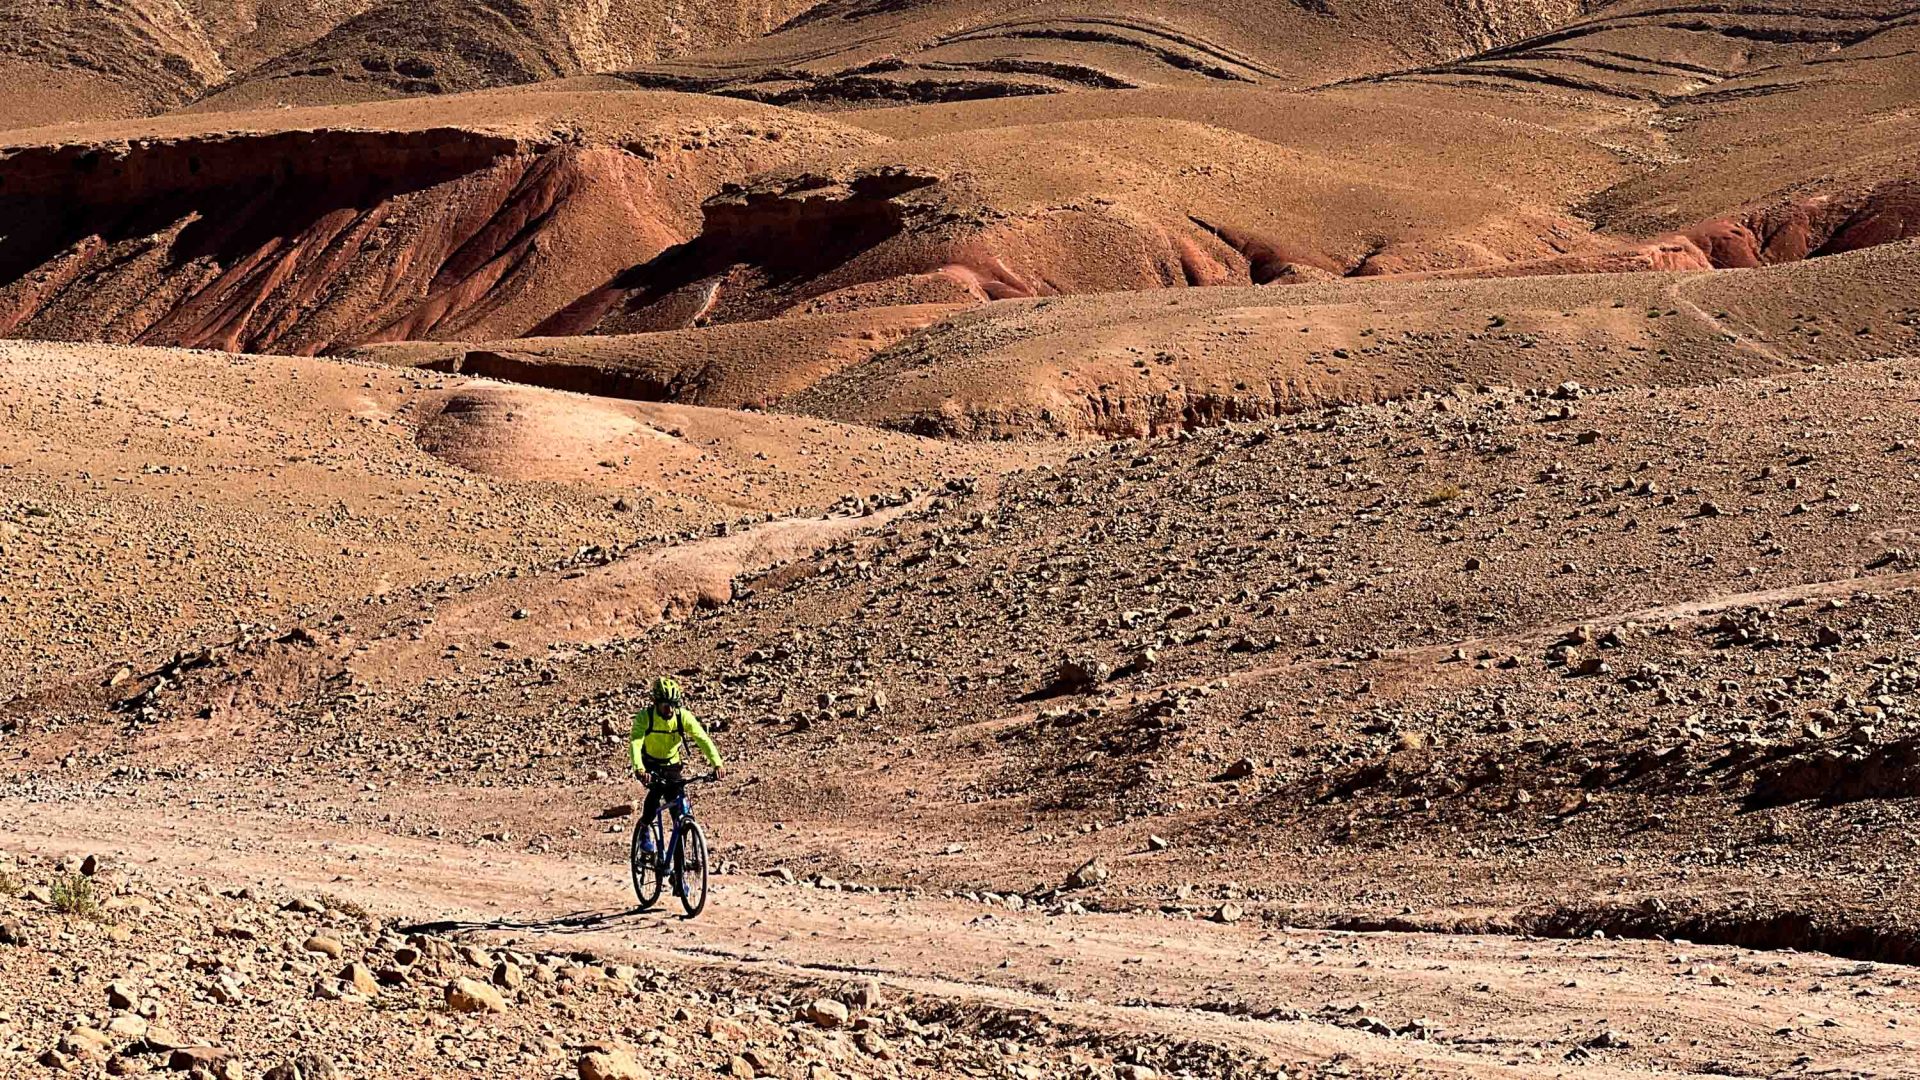 A cyclist traversing a dry, rocky landscape.